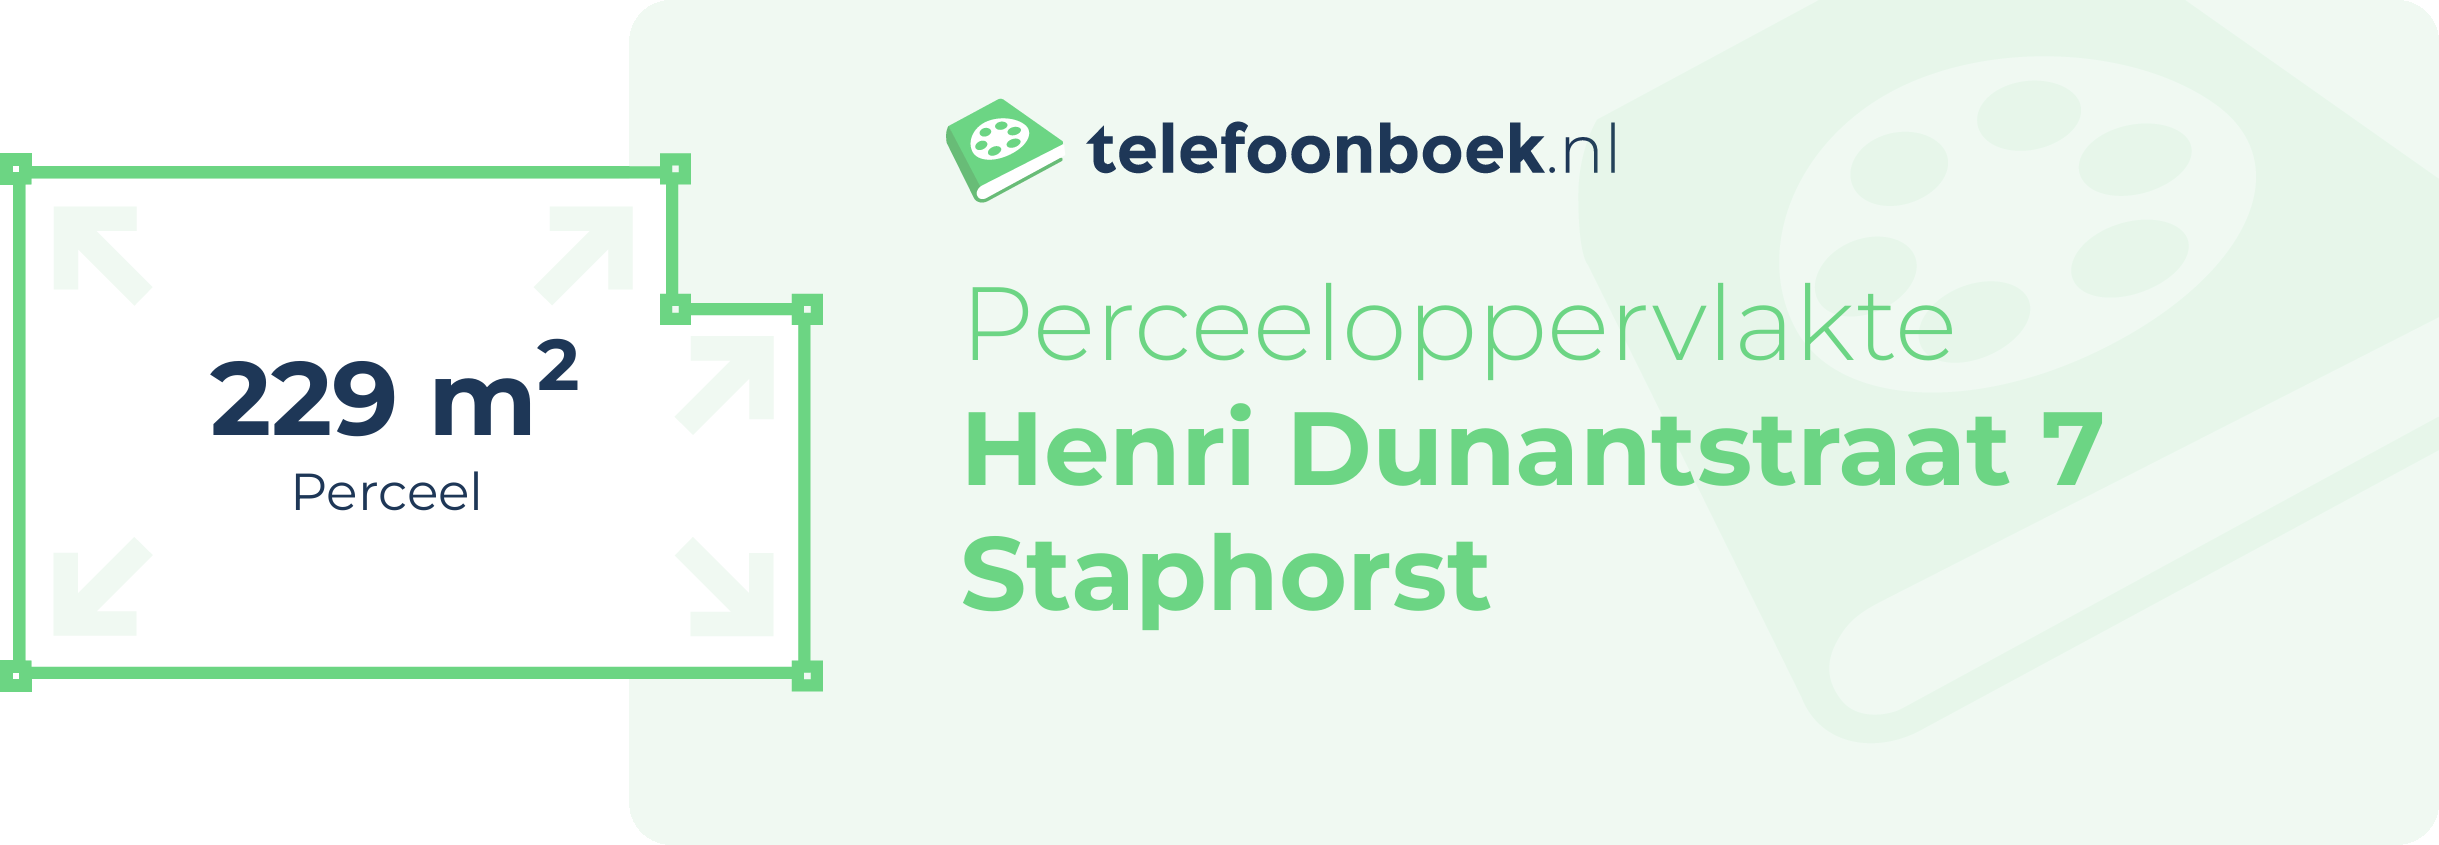 Perceeloppervlakte Henri Dunantstraat 7 Staphorst